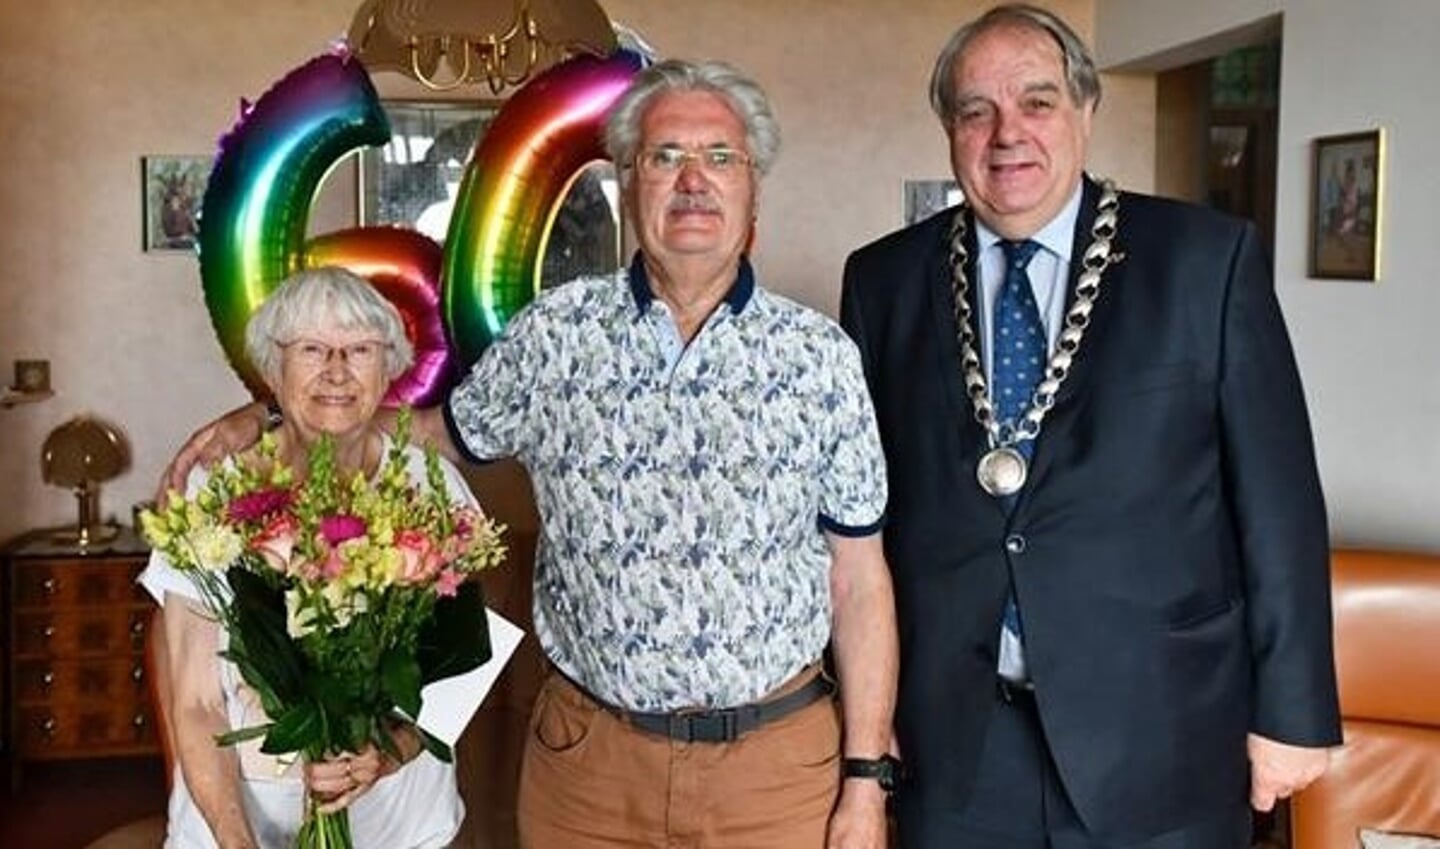 Burgemeester Verkerk bracht een bezoek aan het echtpaar De Wild.